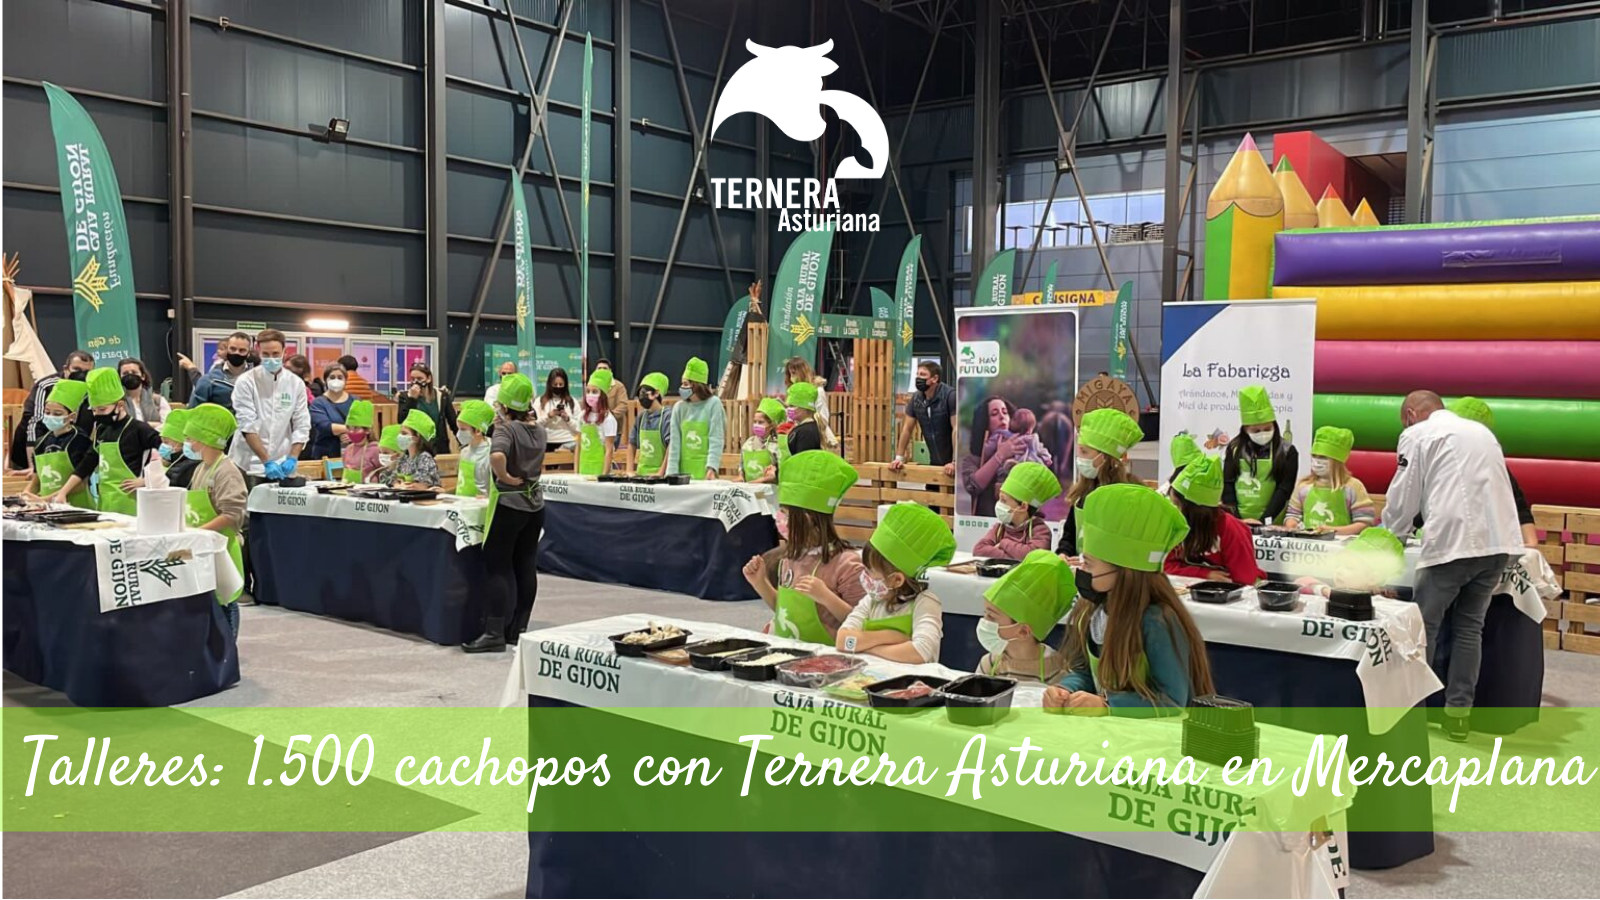 Más de 1.500 cachopos con Ternera Asturiana para los más pequeños en Mercaplana